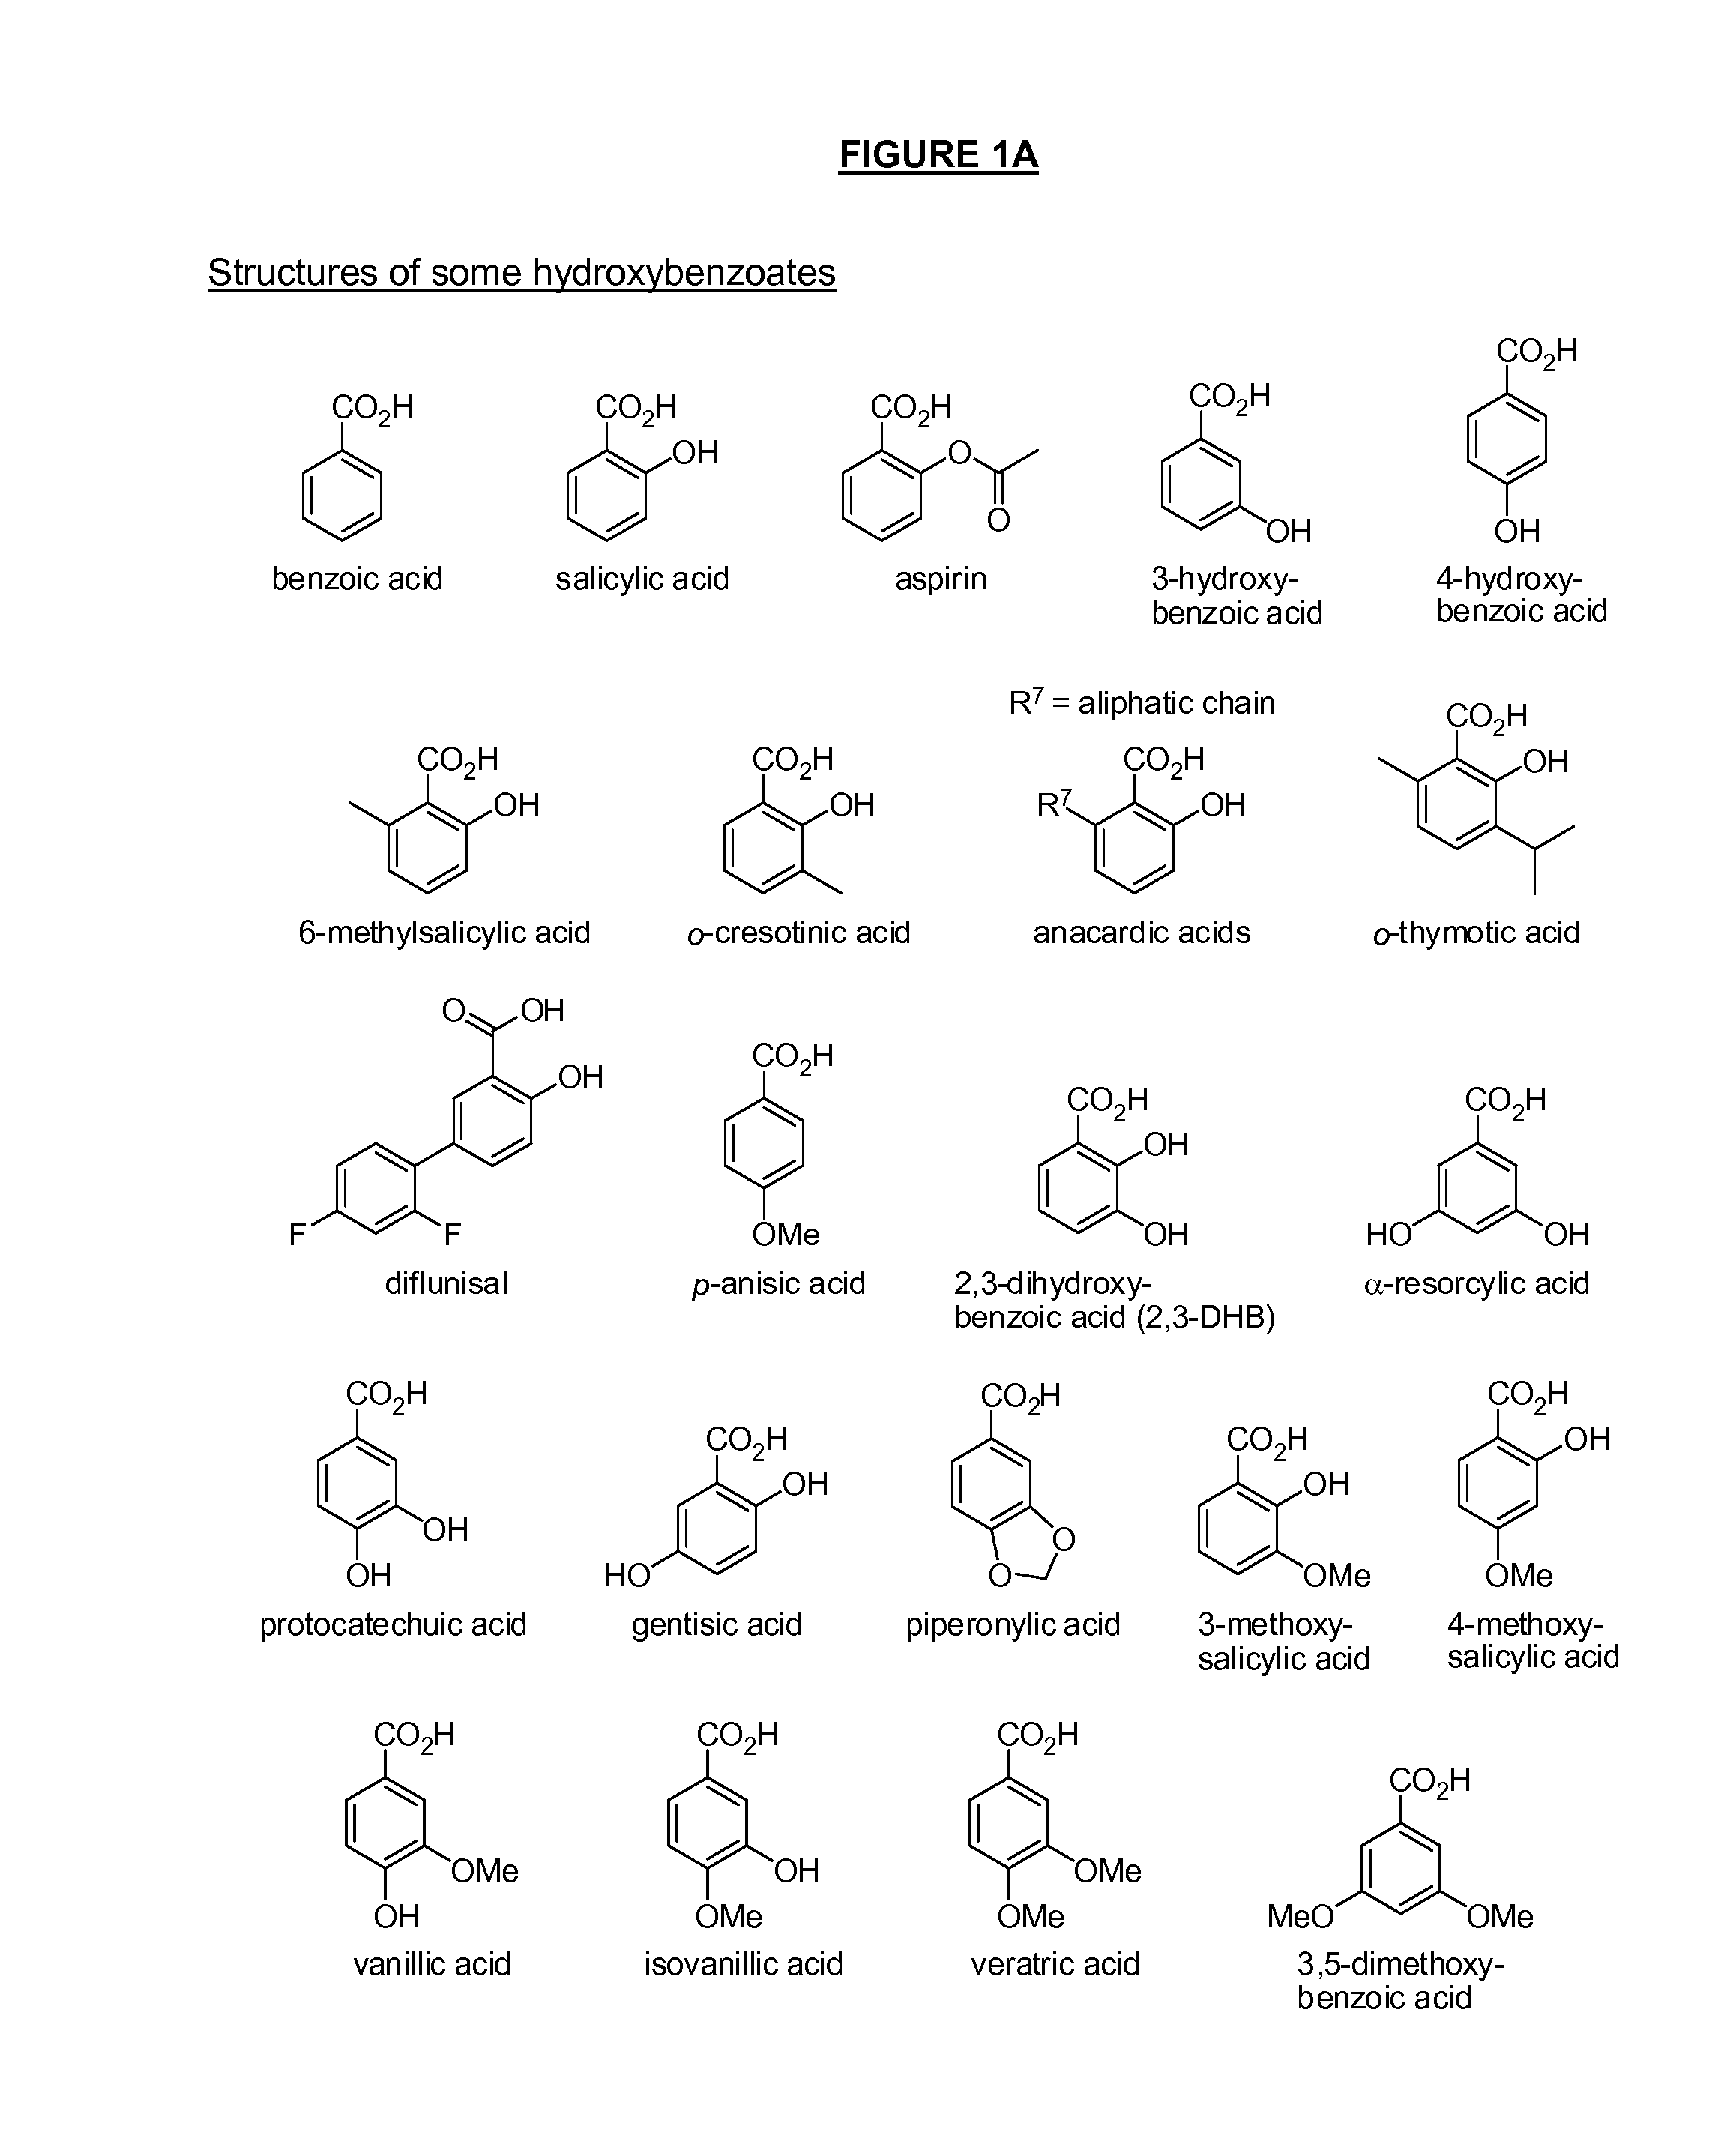 Benzoic acid, benzoic acid derivatives and heteroaryl carboxylic acid conjugates of hydromorphone, prodrugs, methods of making and use thereof